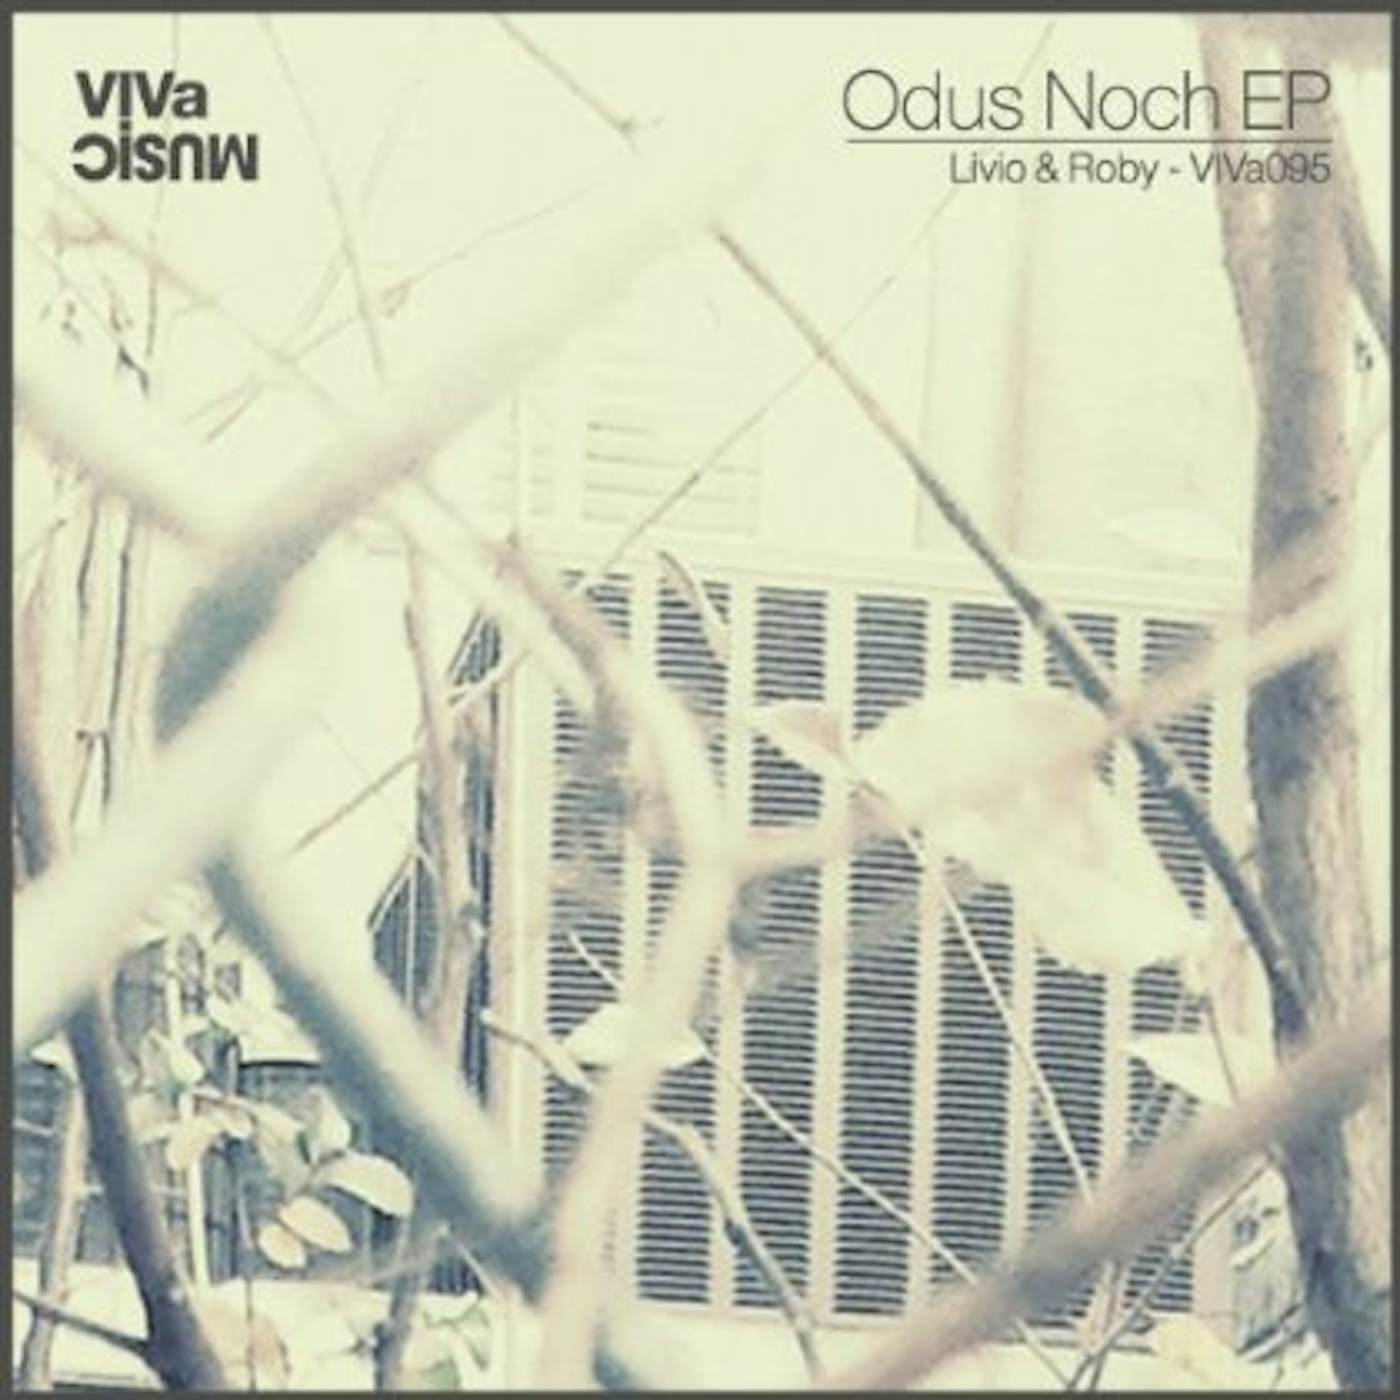 Livio & Roby Odus Noch EP Vinyl Record